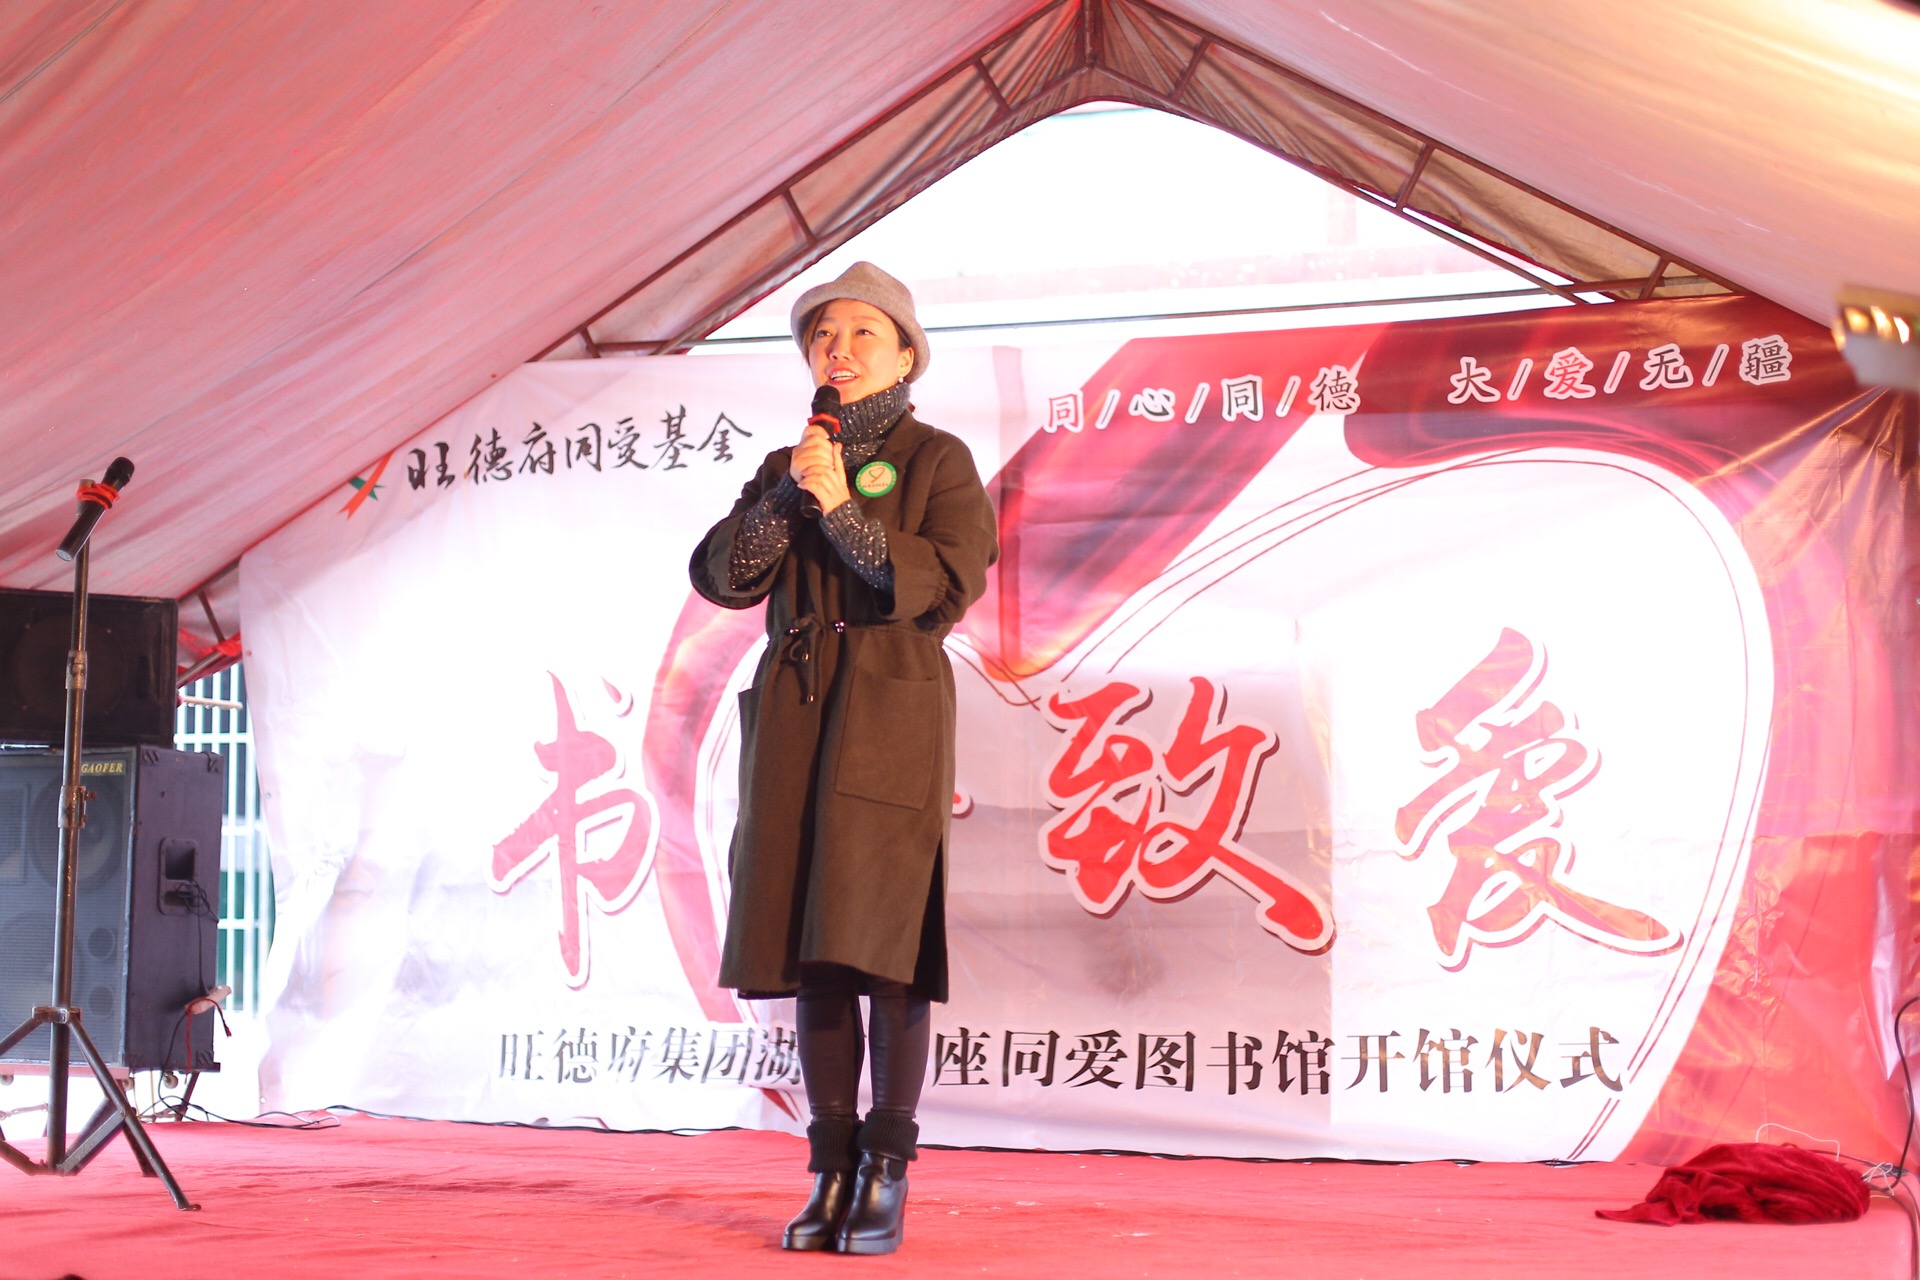 长沙 正文    随后湖南交通频道副总监丹阳女士作为此次活动的爱心